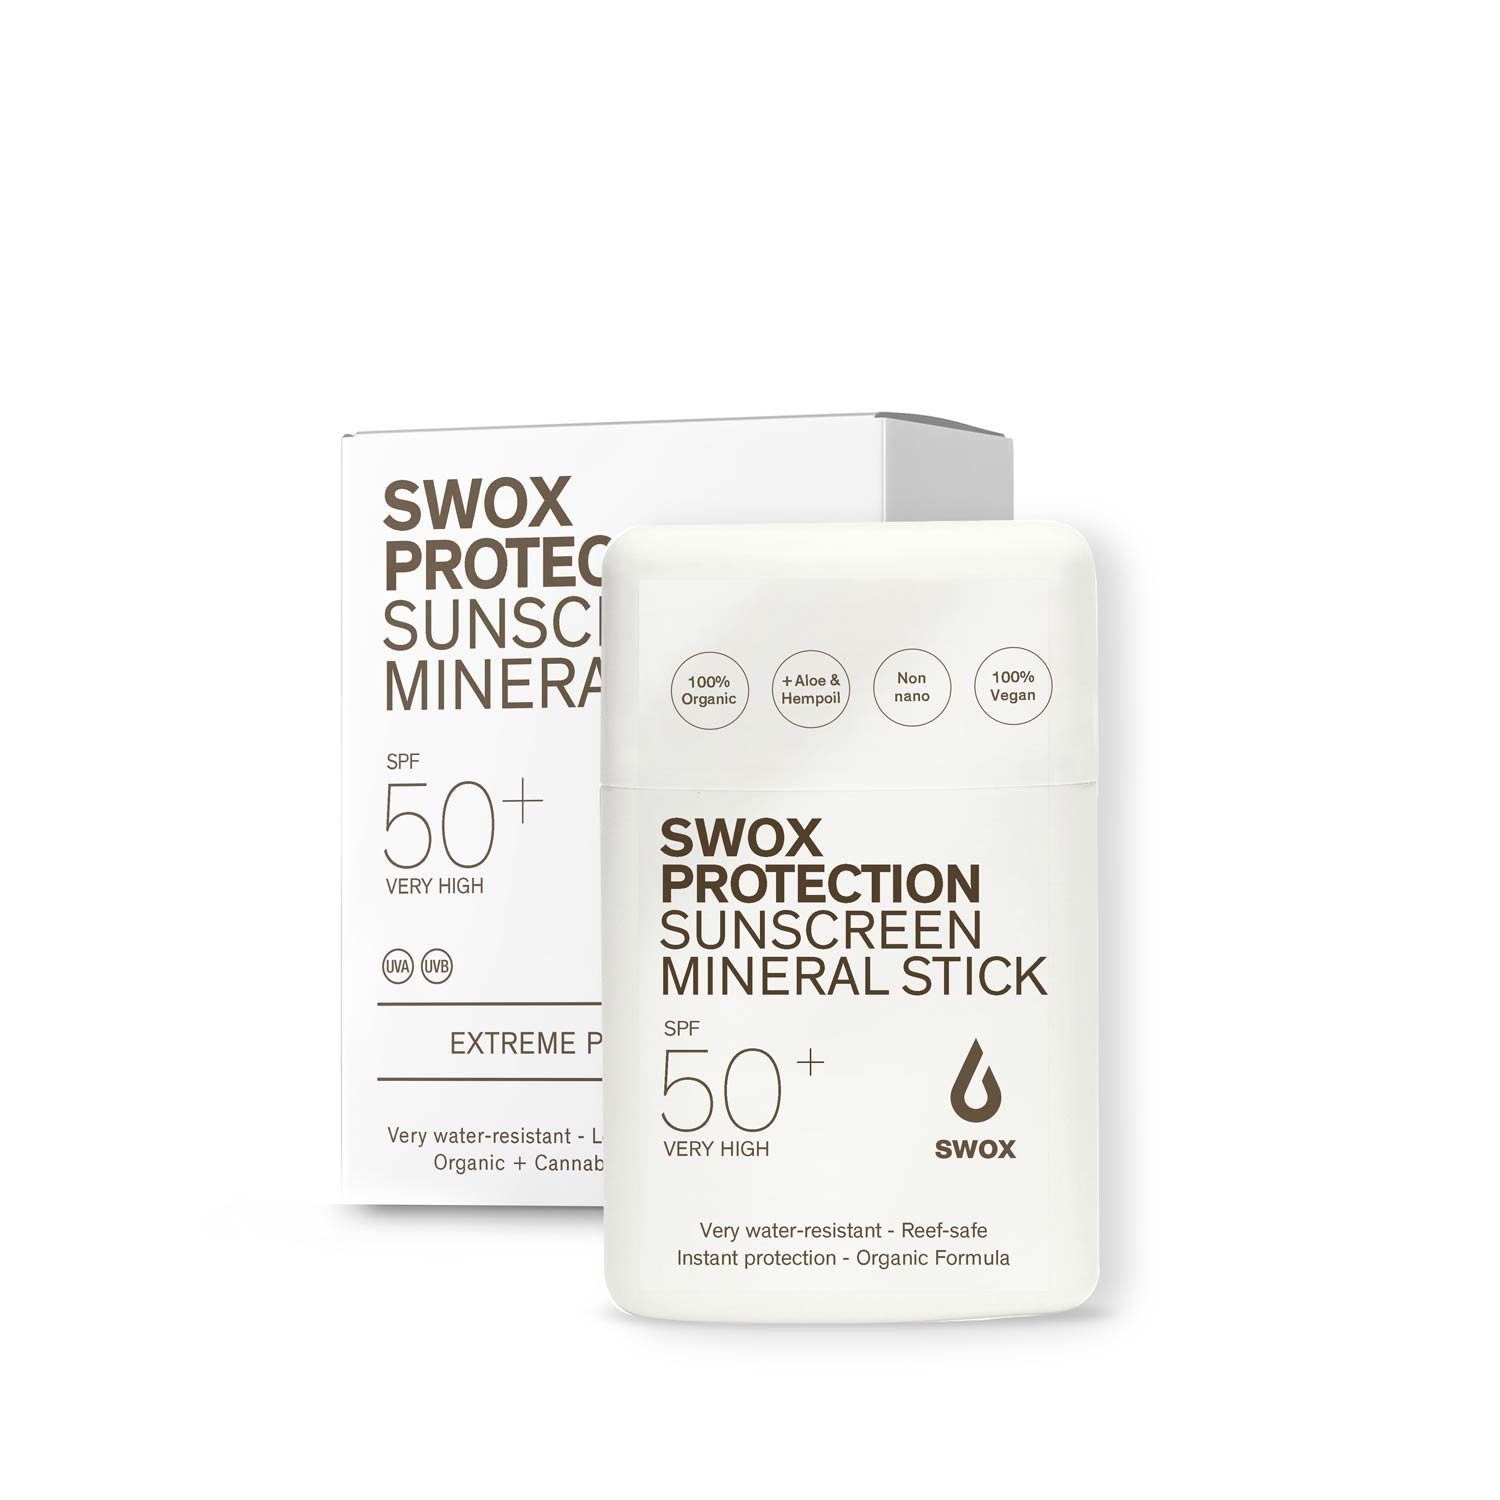 SWOX-Mineral-Stick-2021.jpg